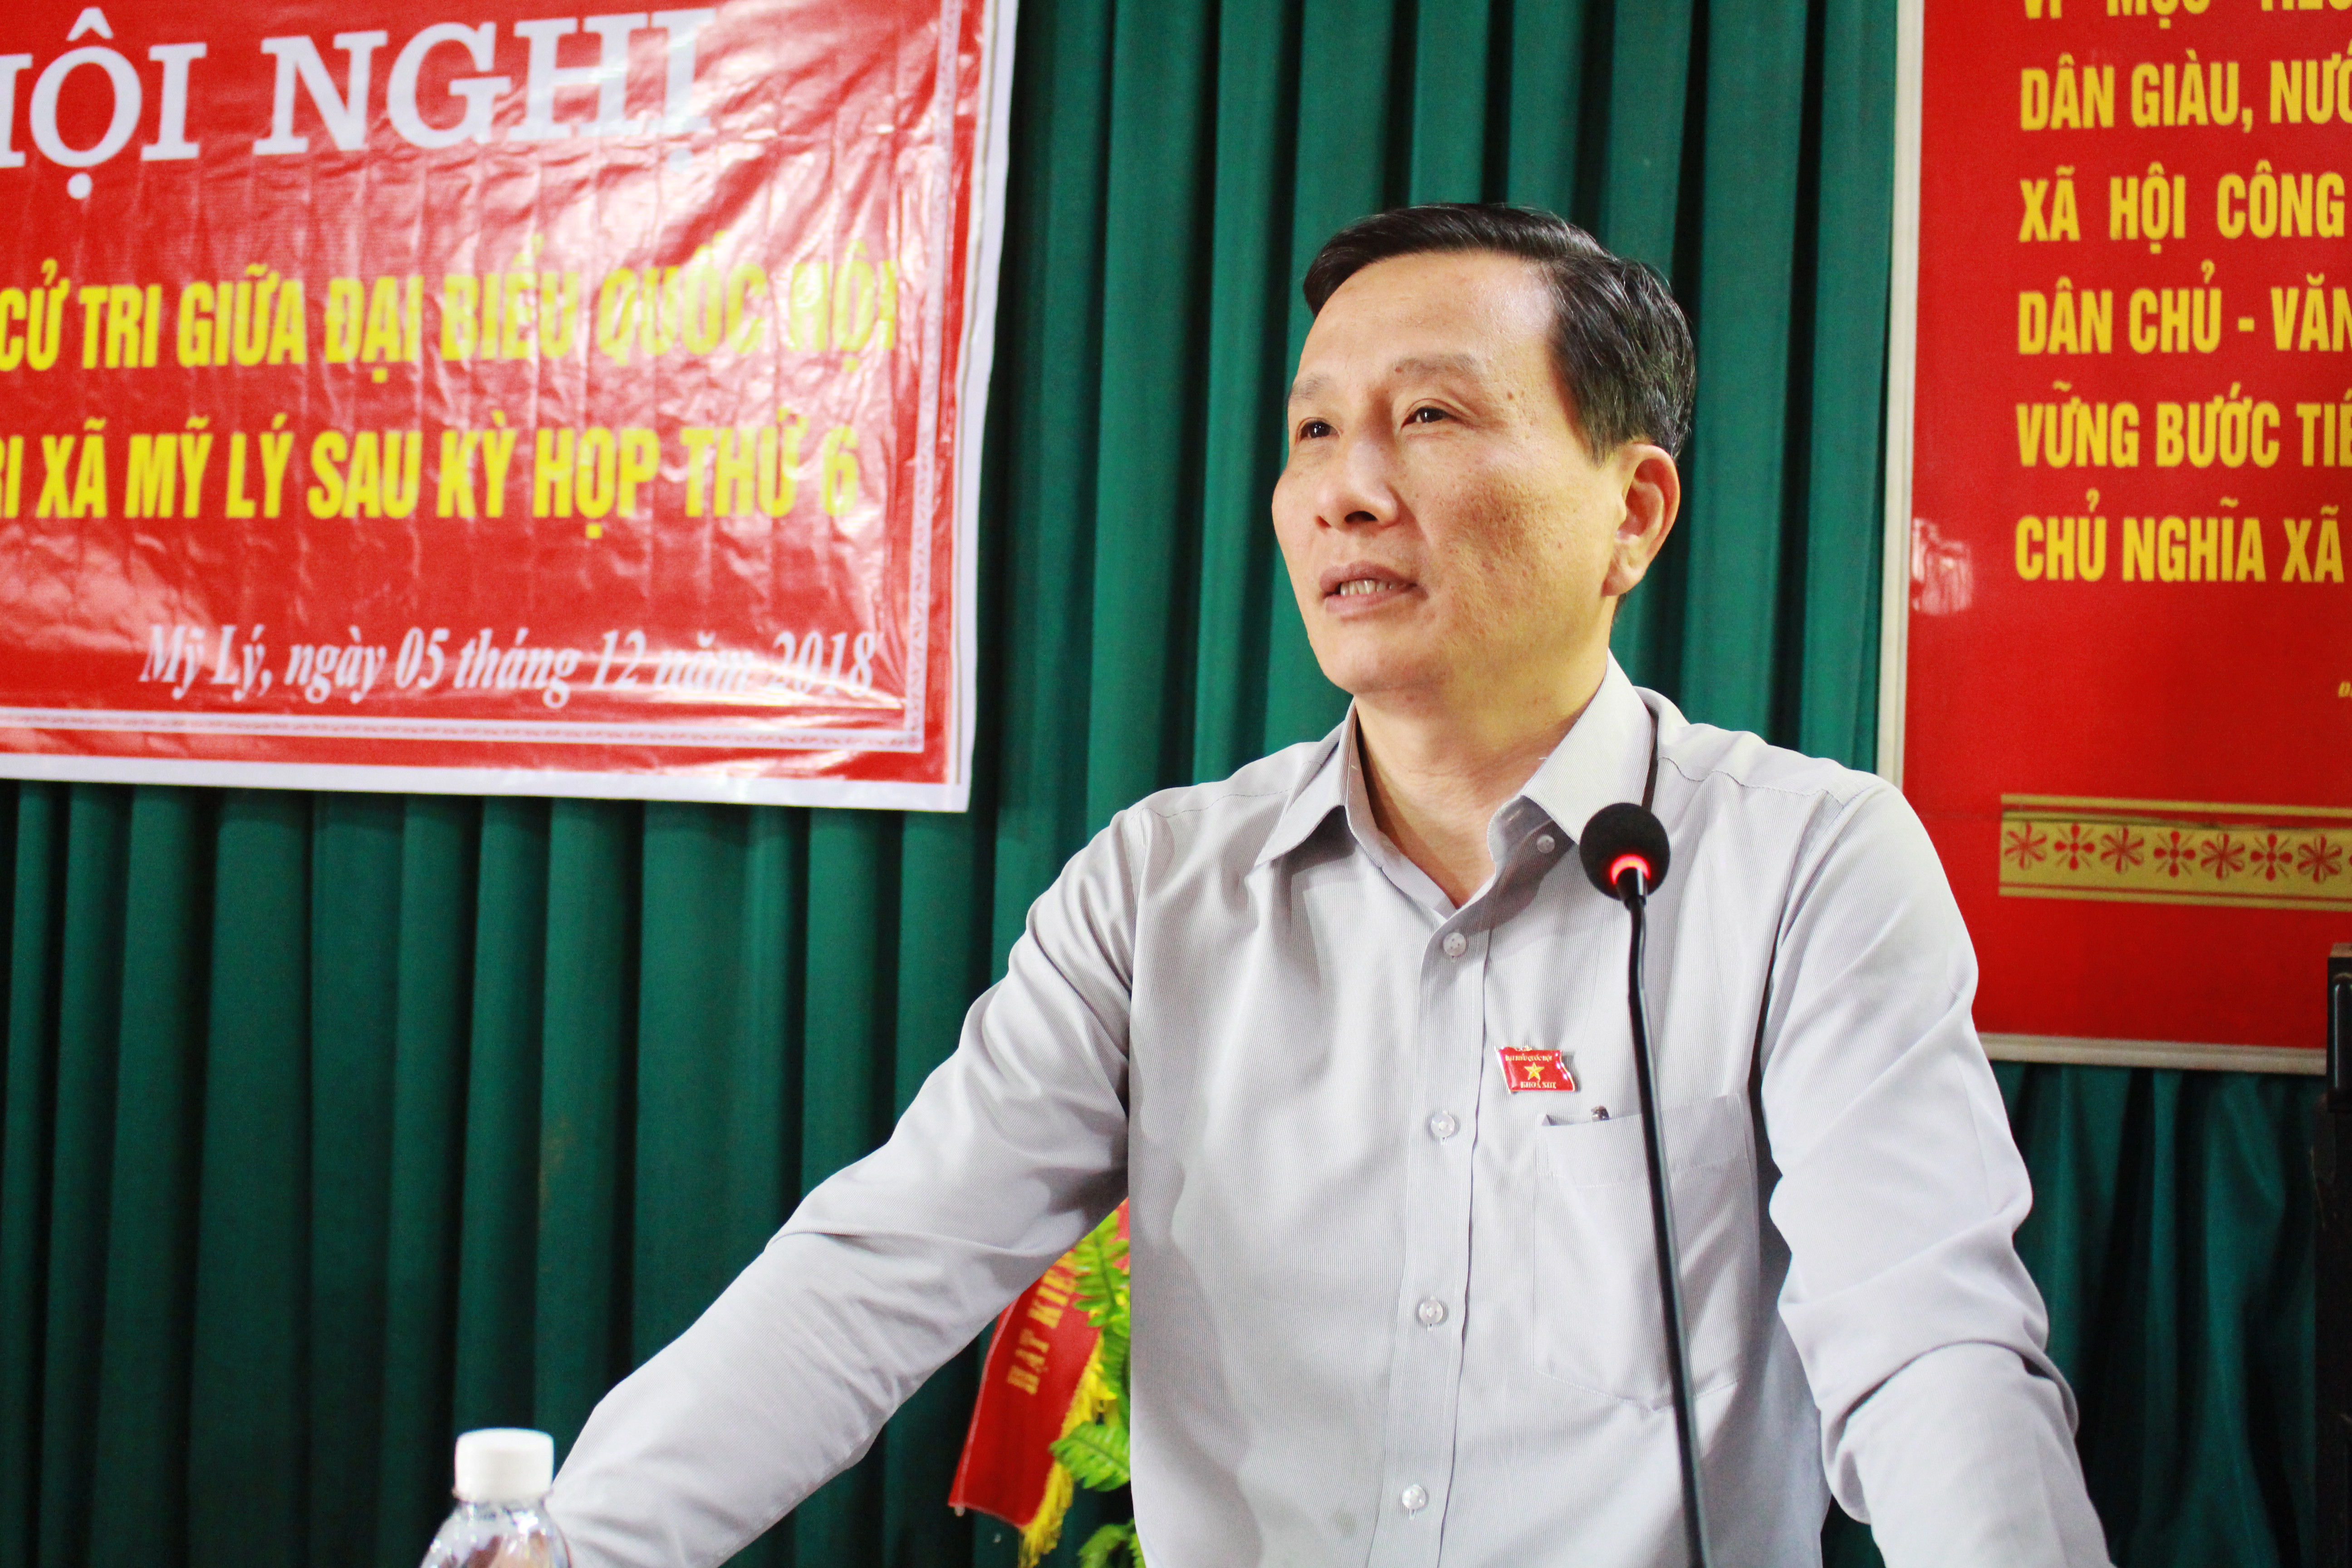 Đồng chí Lê Quang Huy - Phó Chủ nhiệm Ủy ban Khoa học Công nghệ và Môi trường Quốc hội tiếp thu và giải trình các kiến nghị của cử tri. Ảnh: Phương Thúy